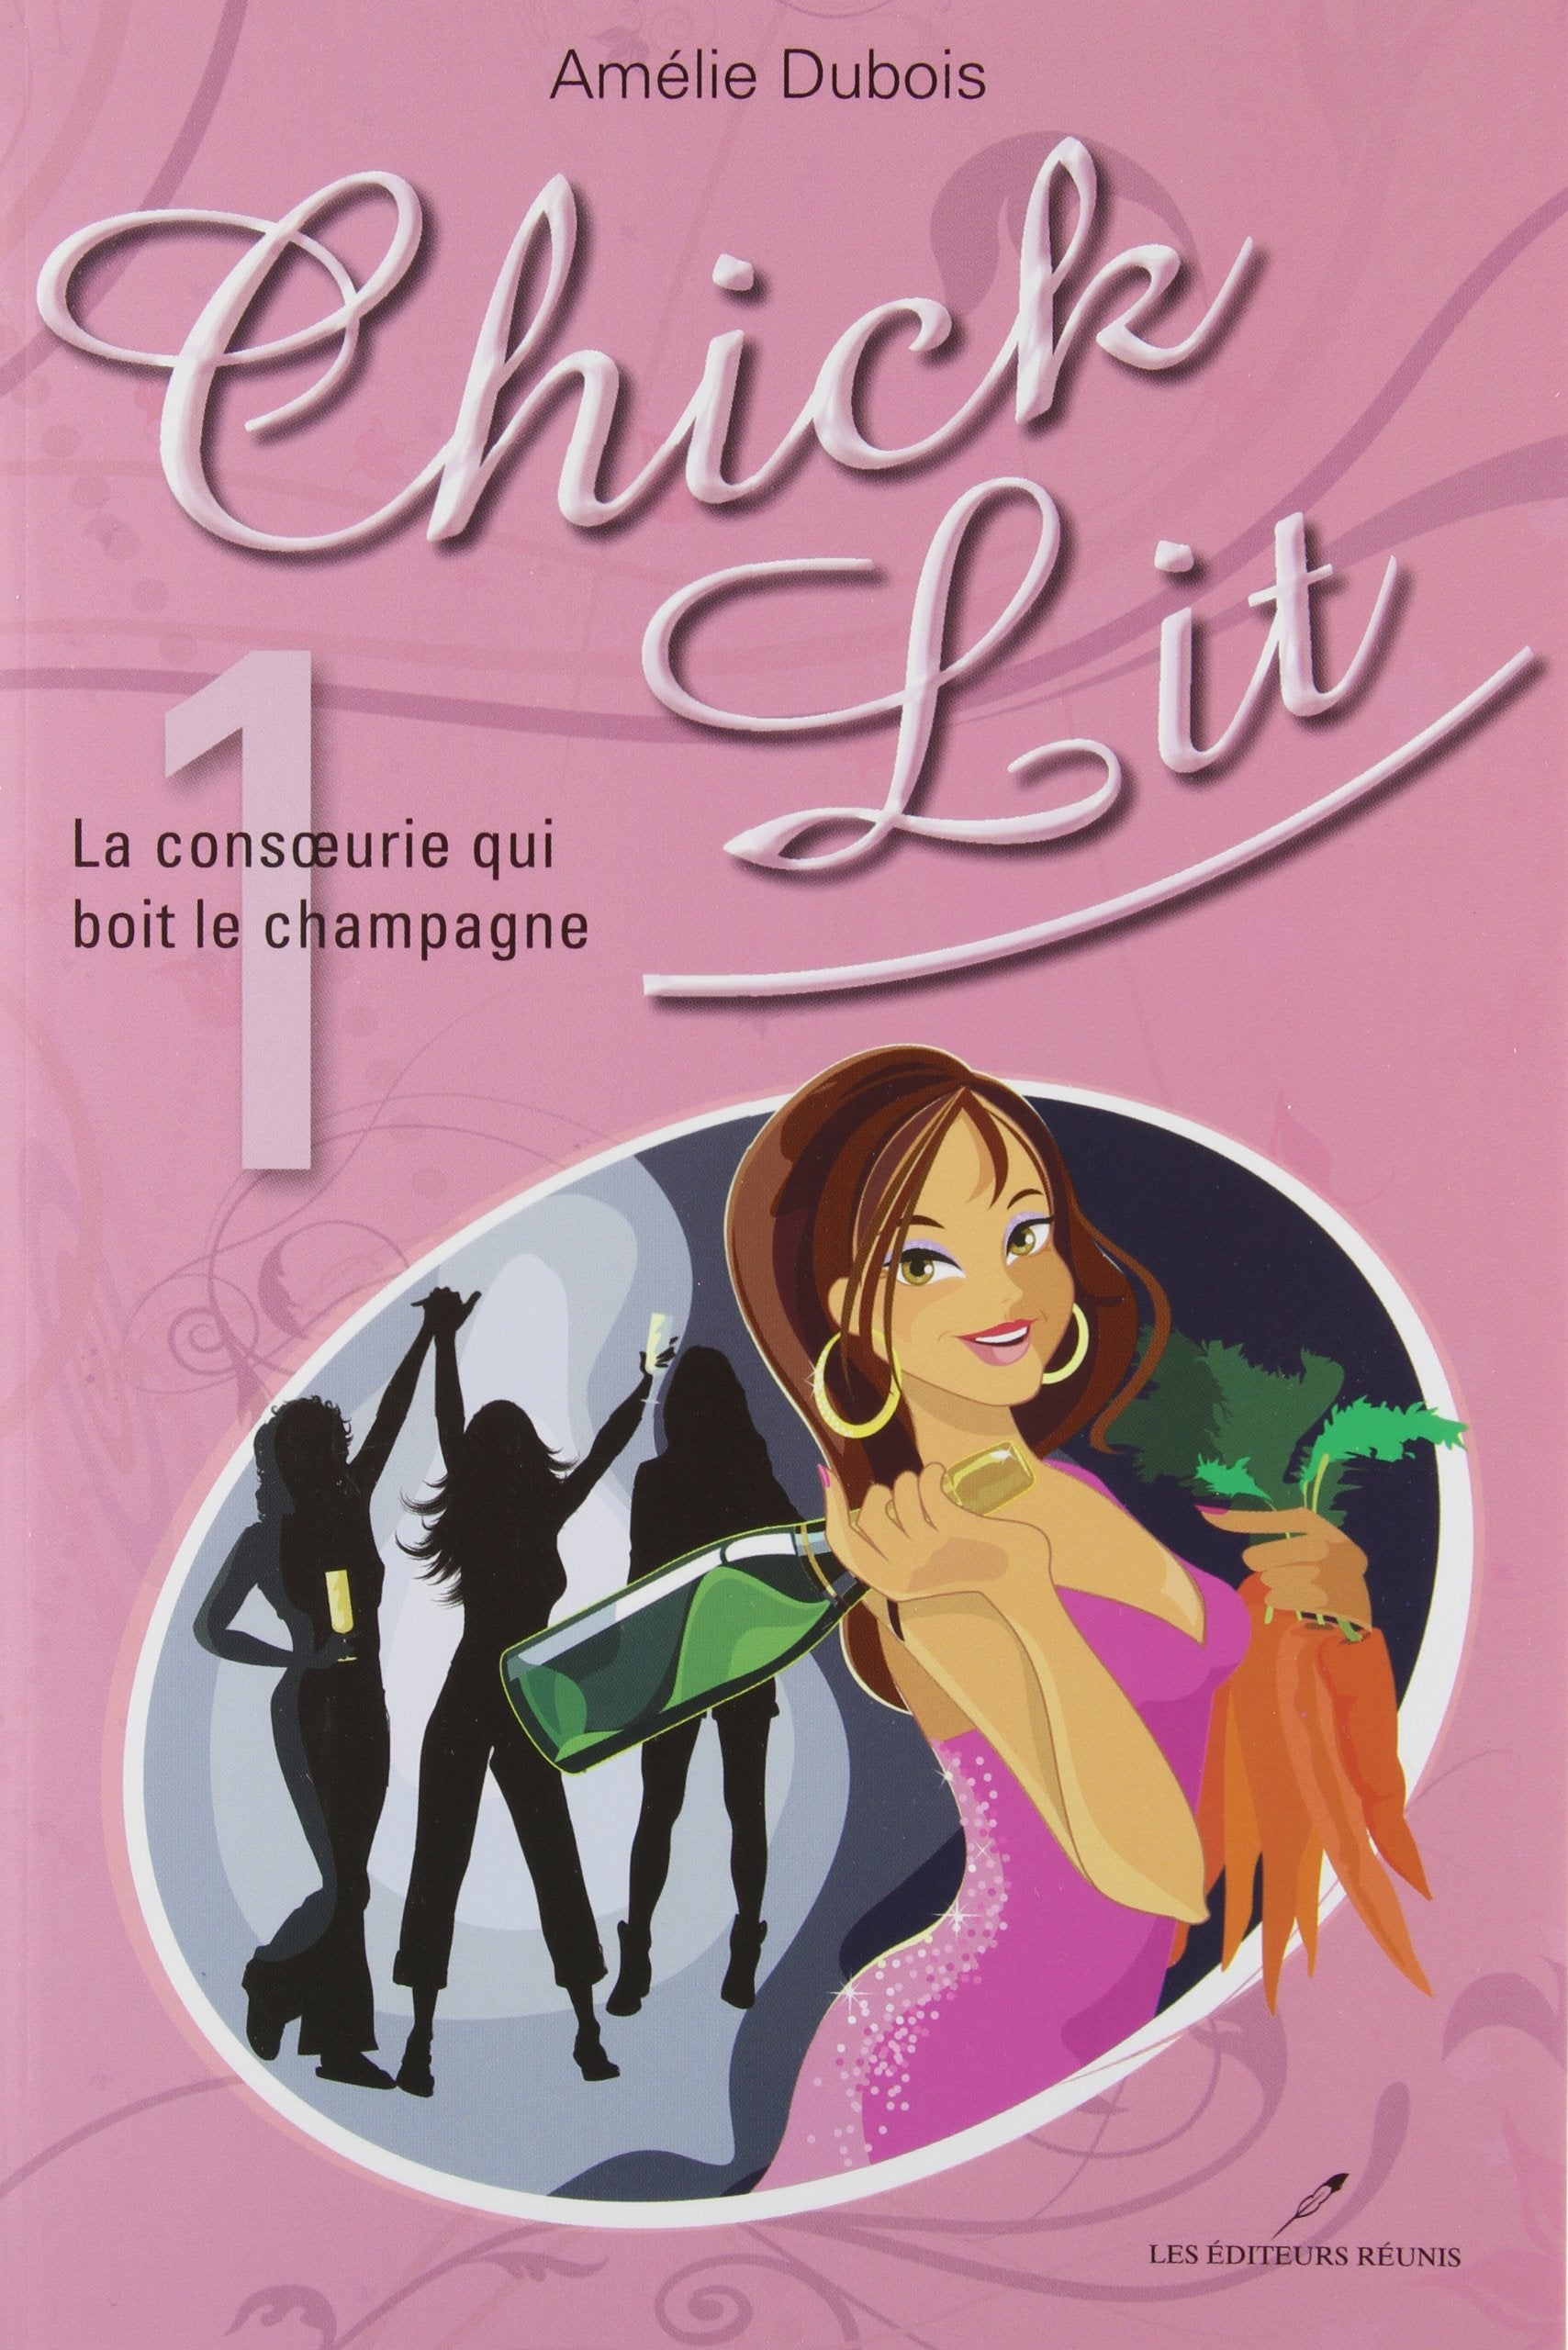 Livre ISBN 2895851158 Chick Lit # 1 : La consoeurie qui boit le champagne (Amélie dubois)